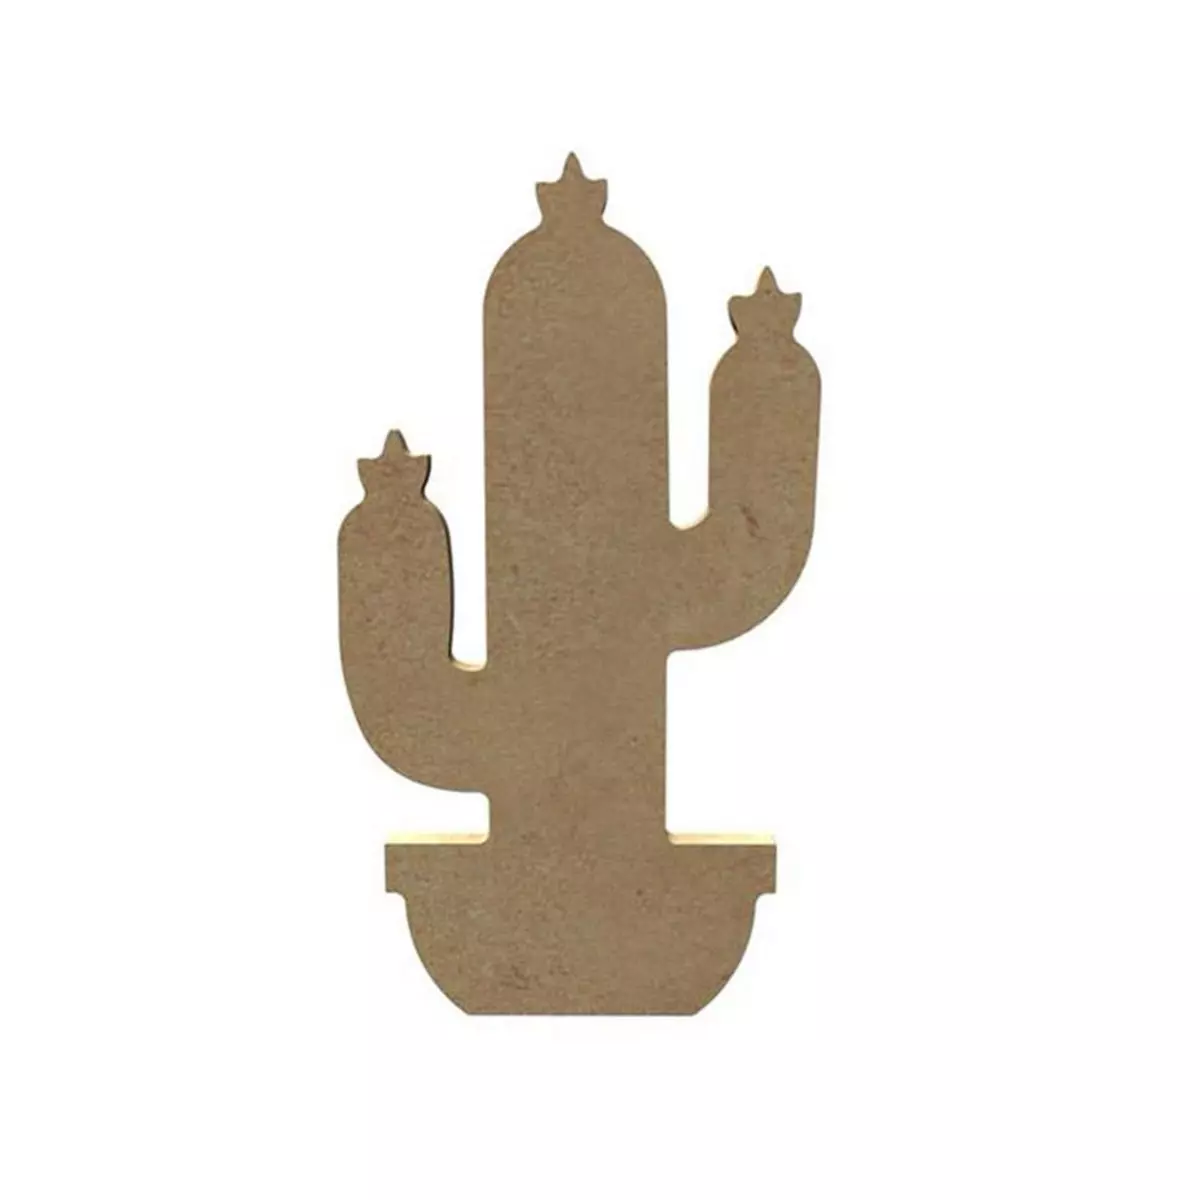  Cactus en bois MDF à décorer - 15 cm